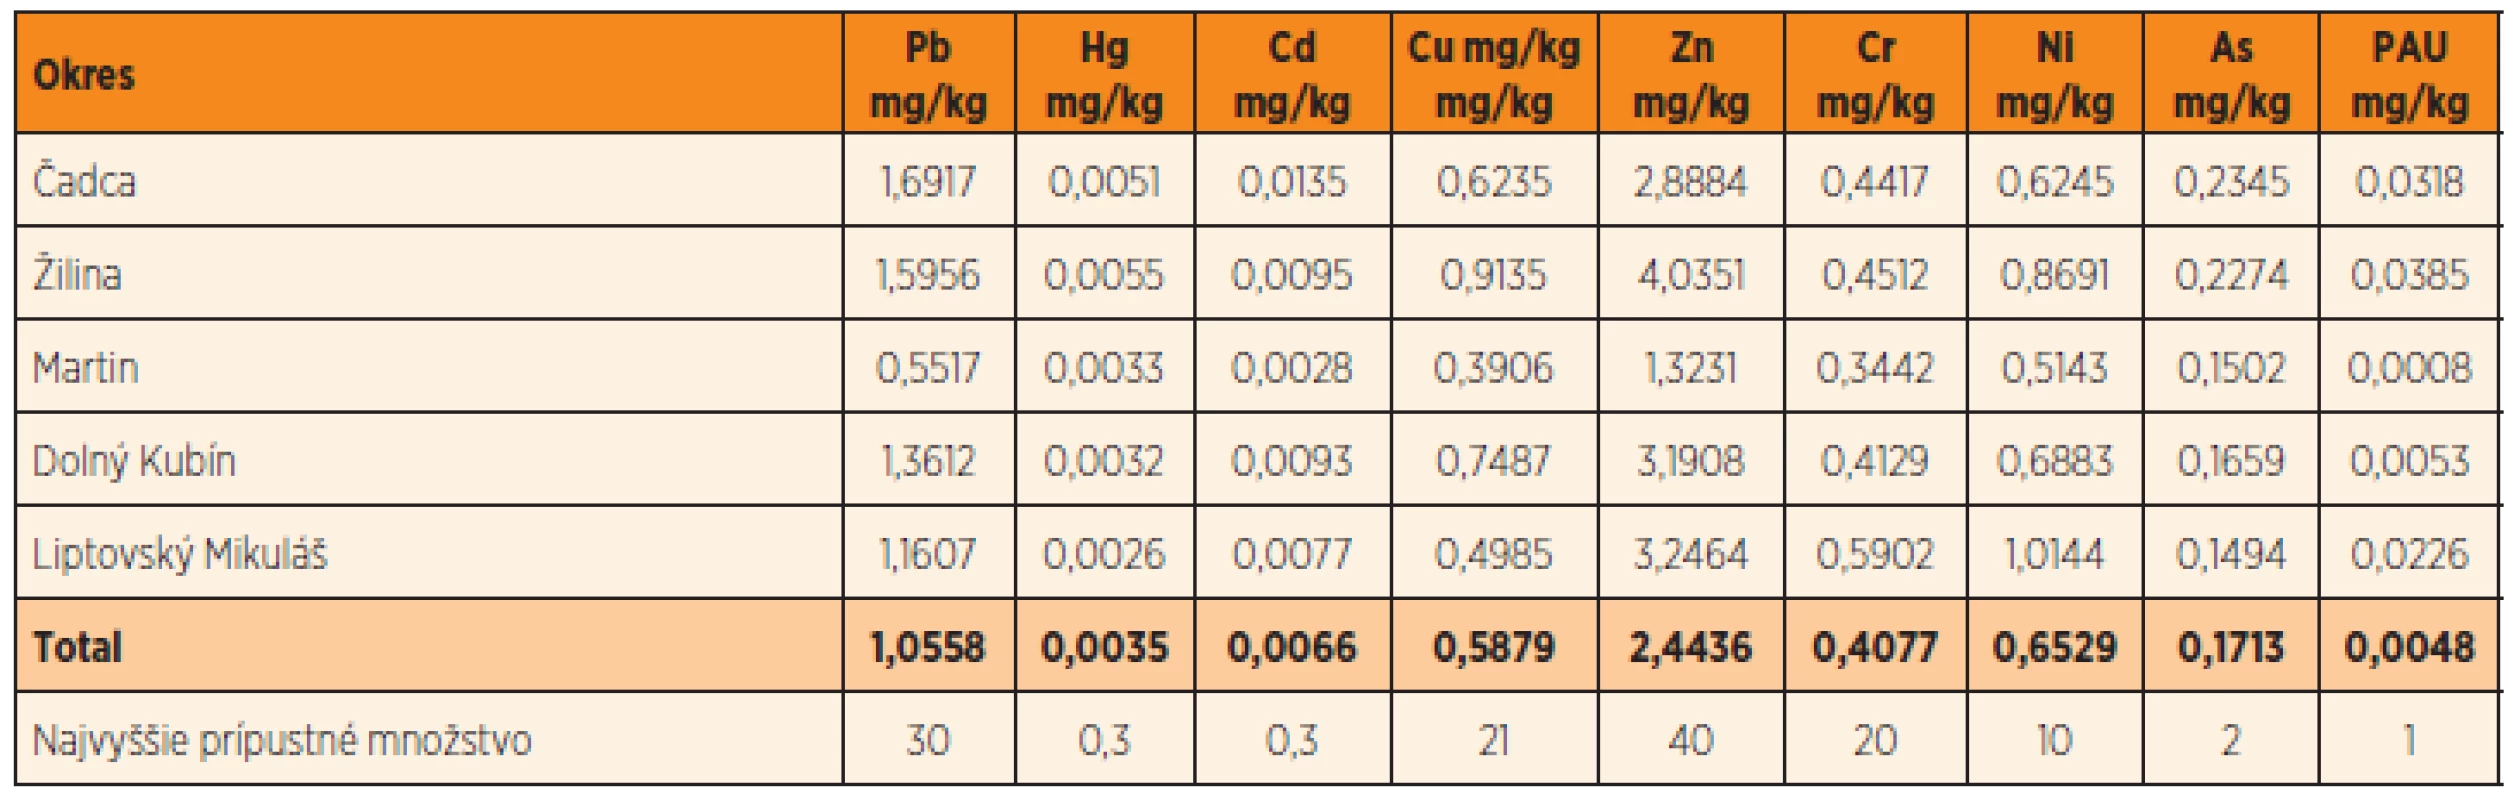 Geometrický priemer koncentrácií ťažkých kovov a polycyklických aromatických uhľovodíkov v okresoch Žilinského kraja.